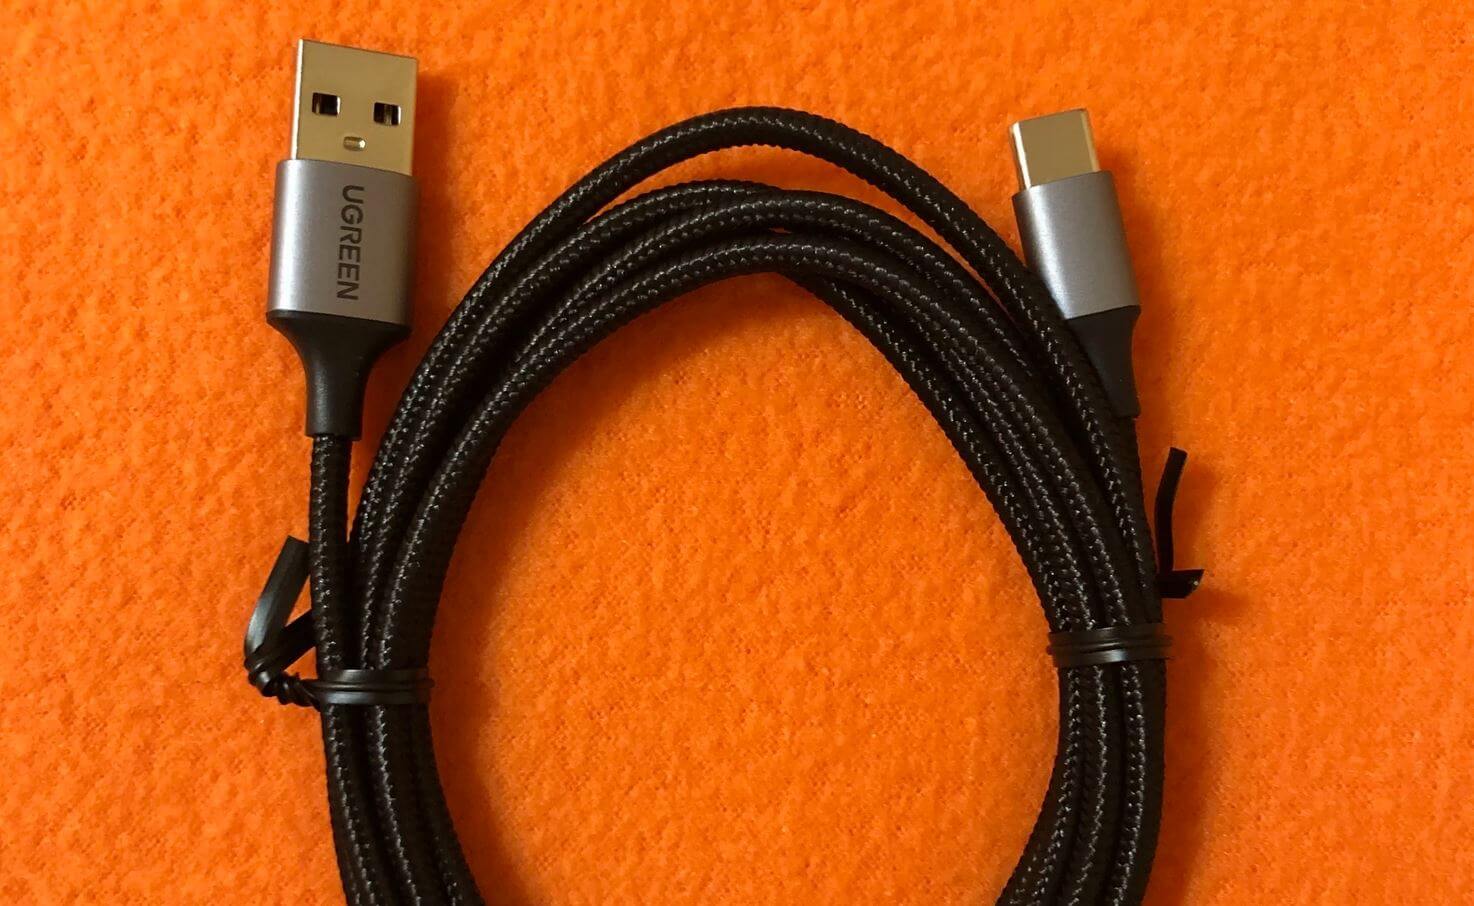 USB-кабель для зарядки смартфона. Хороший зарядный кабель точно не будет лишним в любой квартире. Фото.